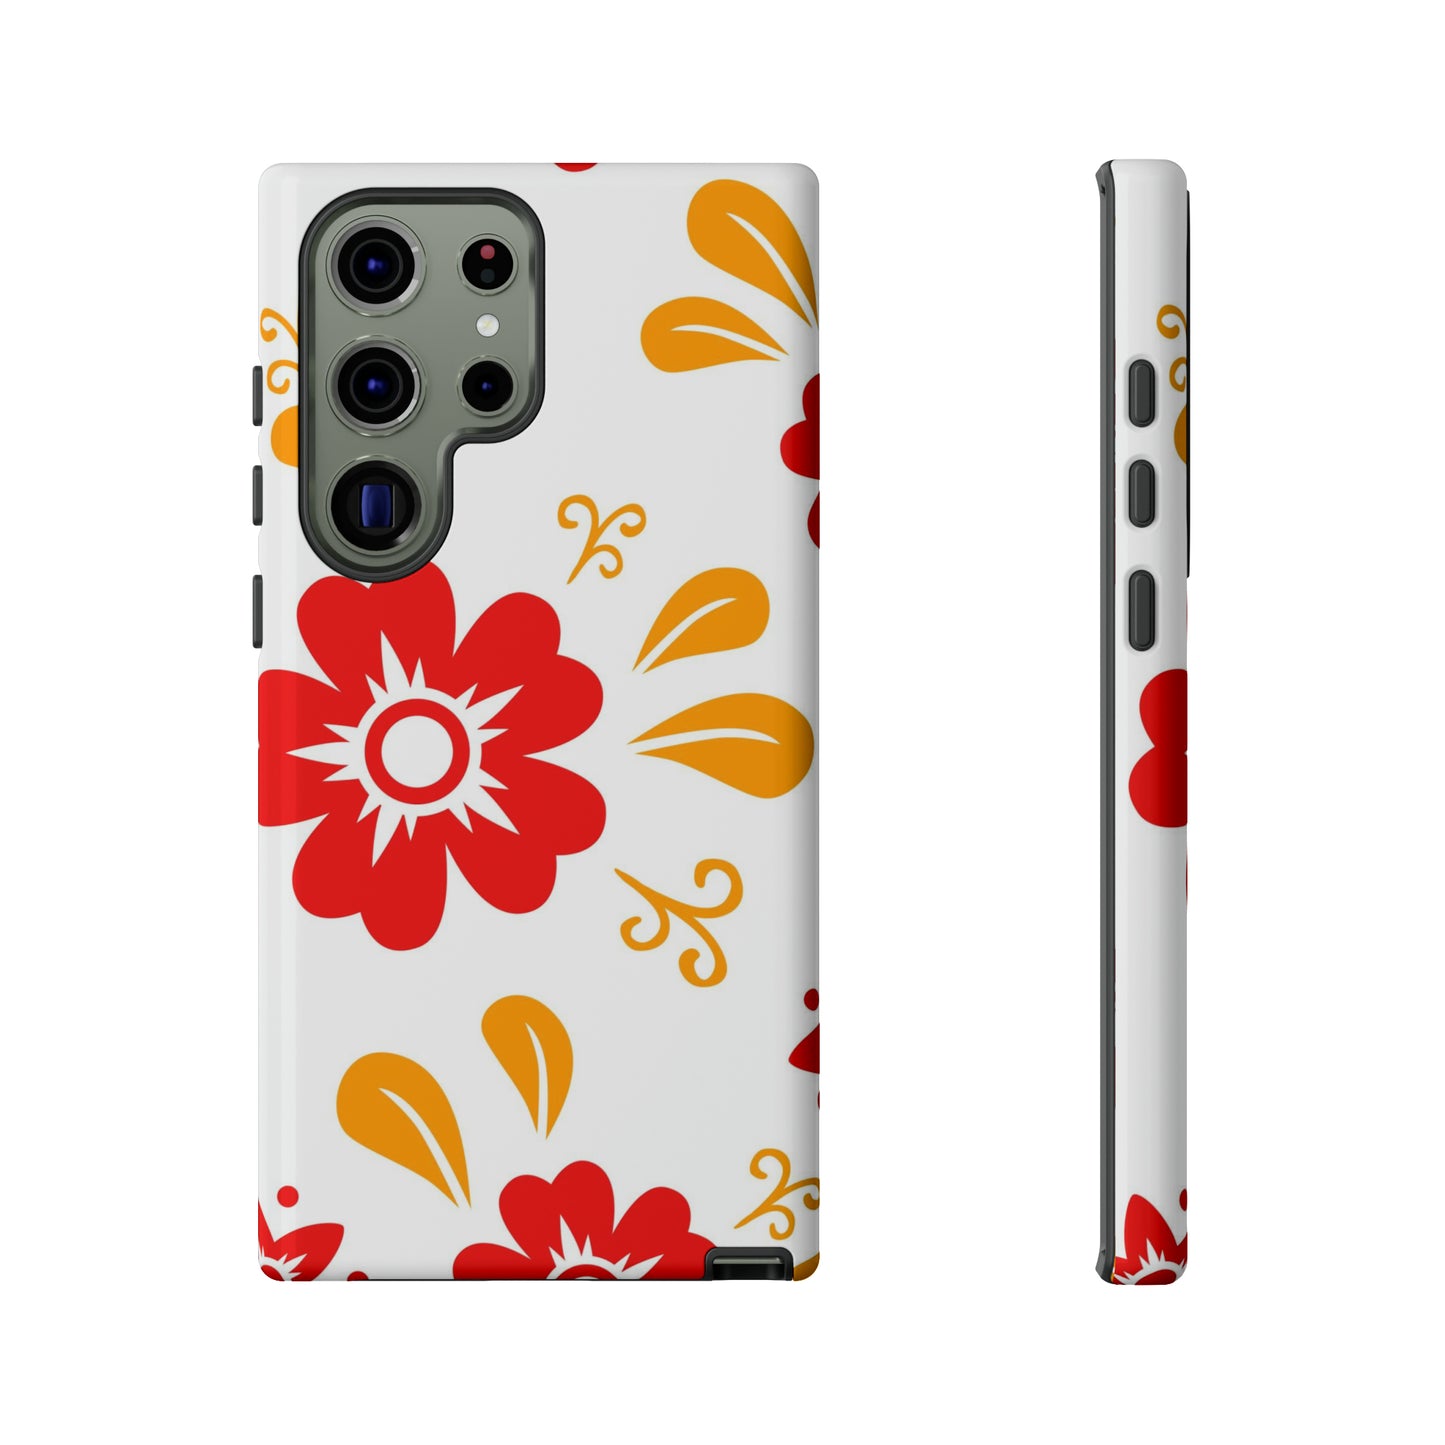 Red flower Samsung phone case